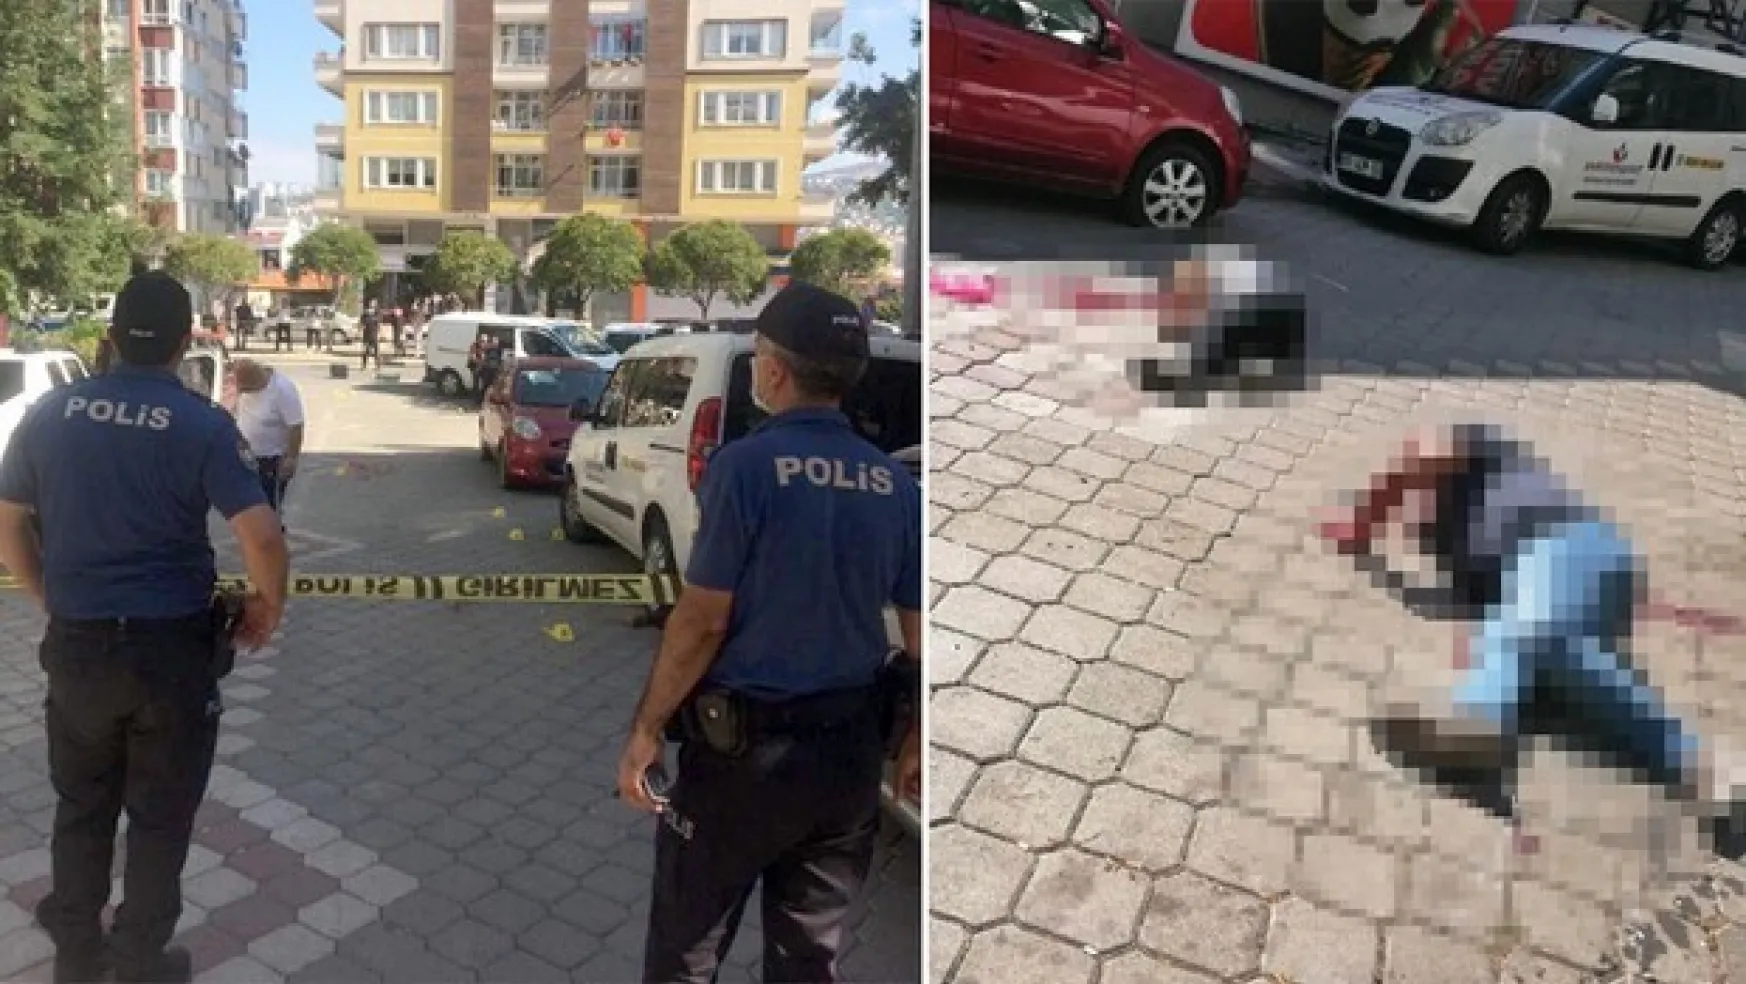 Samsun'da dehşete düşüren olay: 2 ölü, 3 yaralı